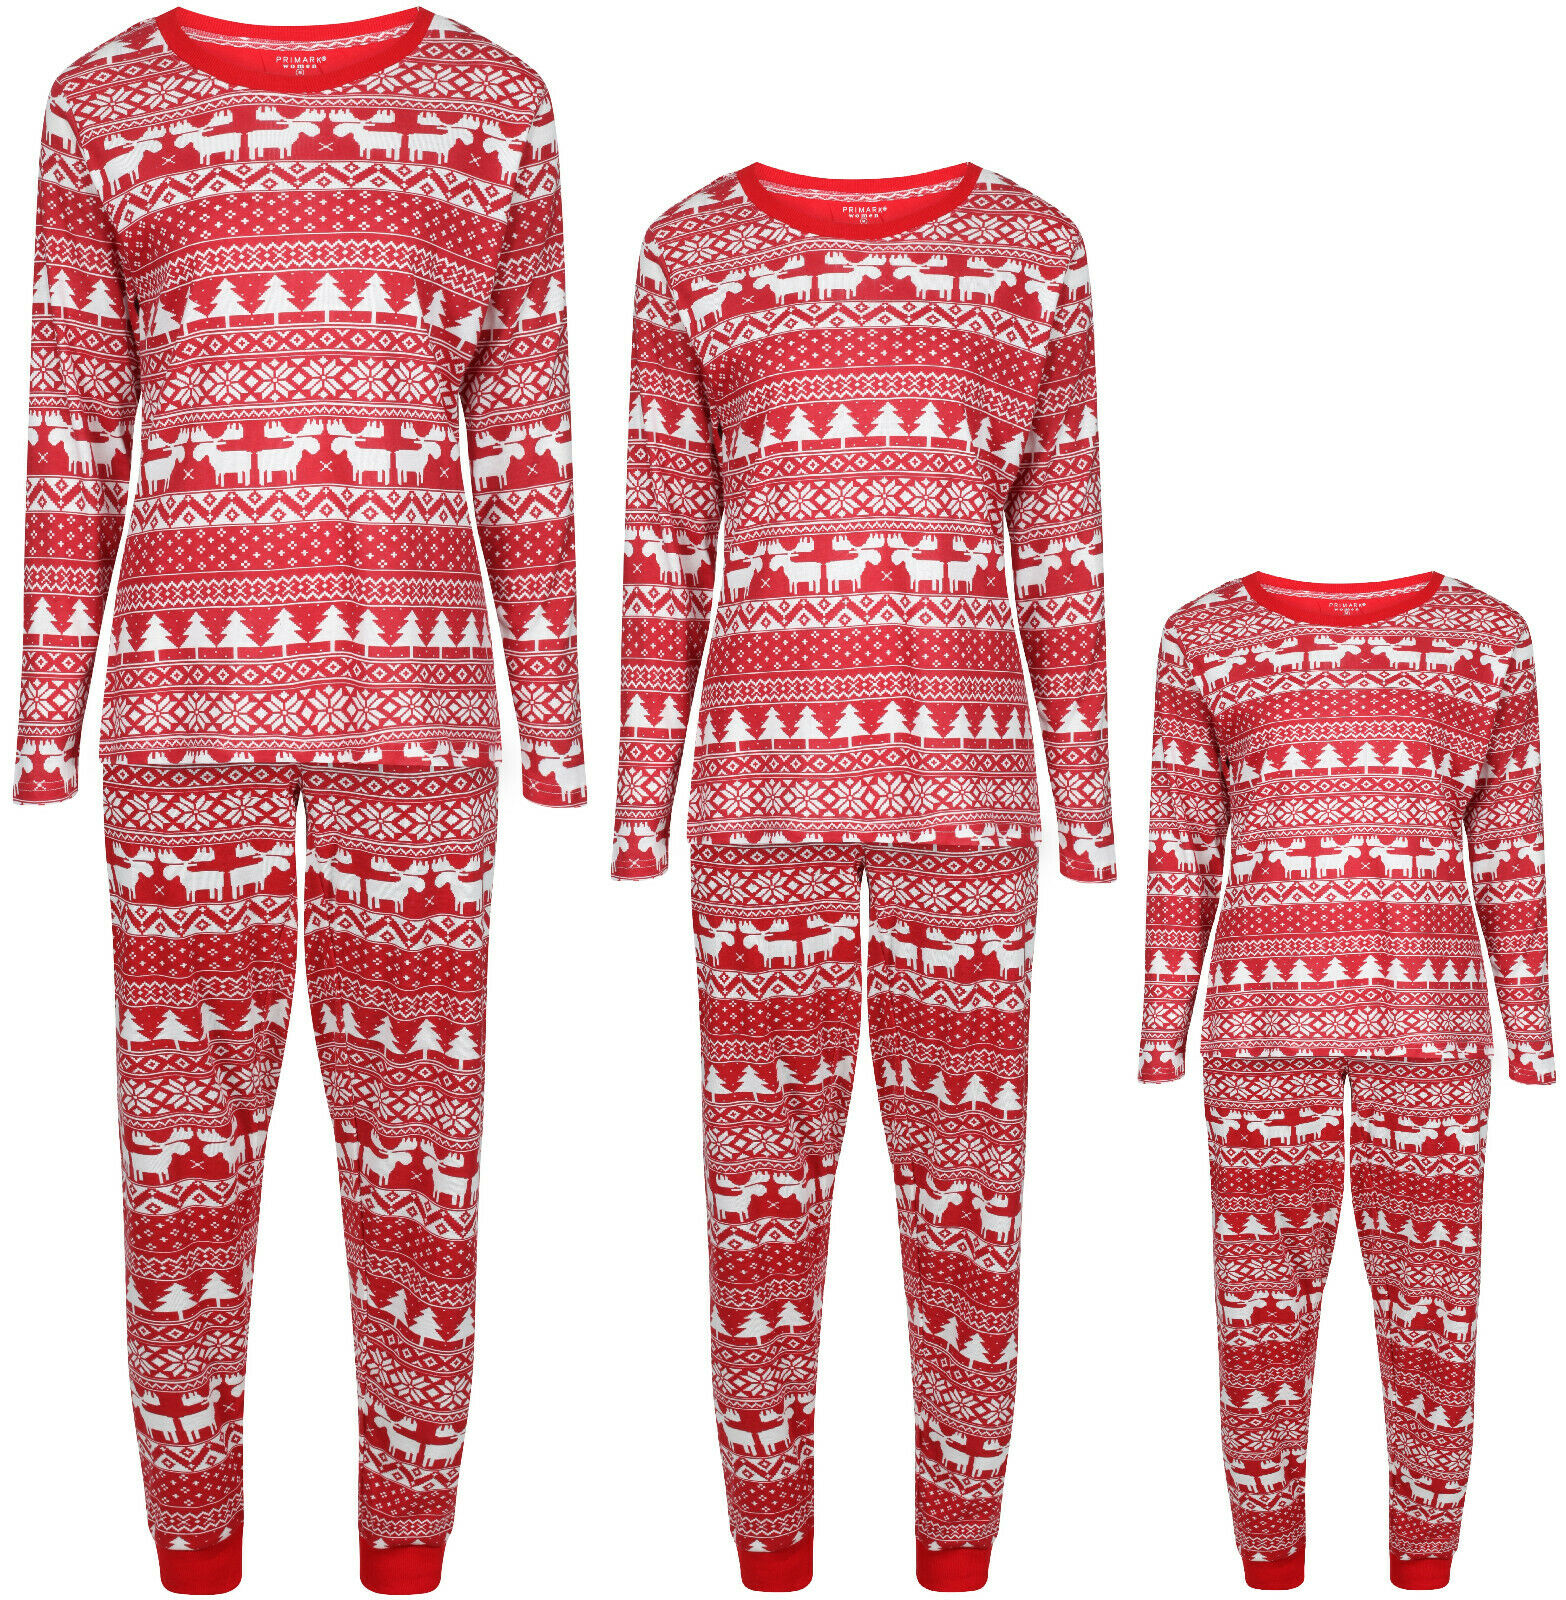 Vánoční pyžamo - design pro celou rodinu - pánská verze